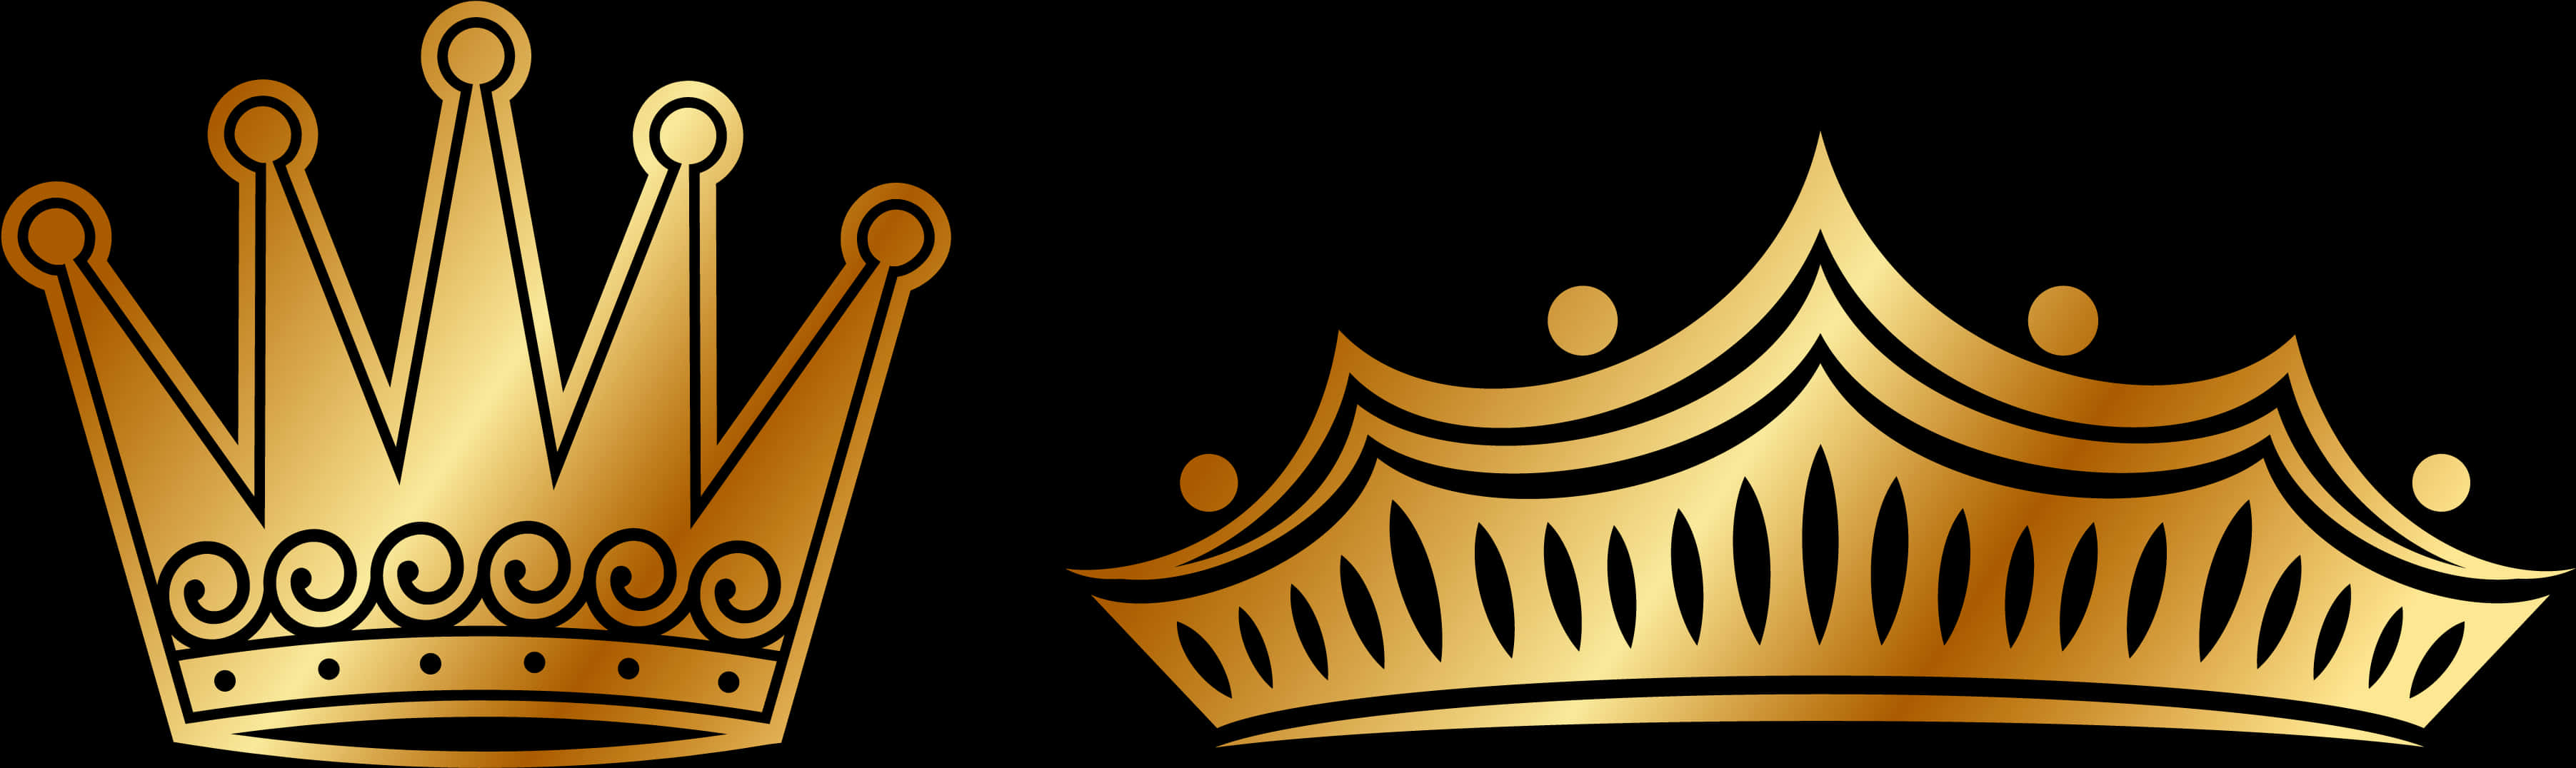 Golden Crowns Vector Illustration PNG image